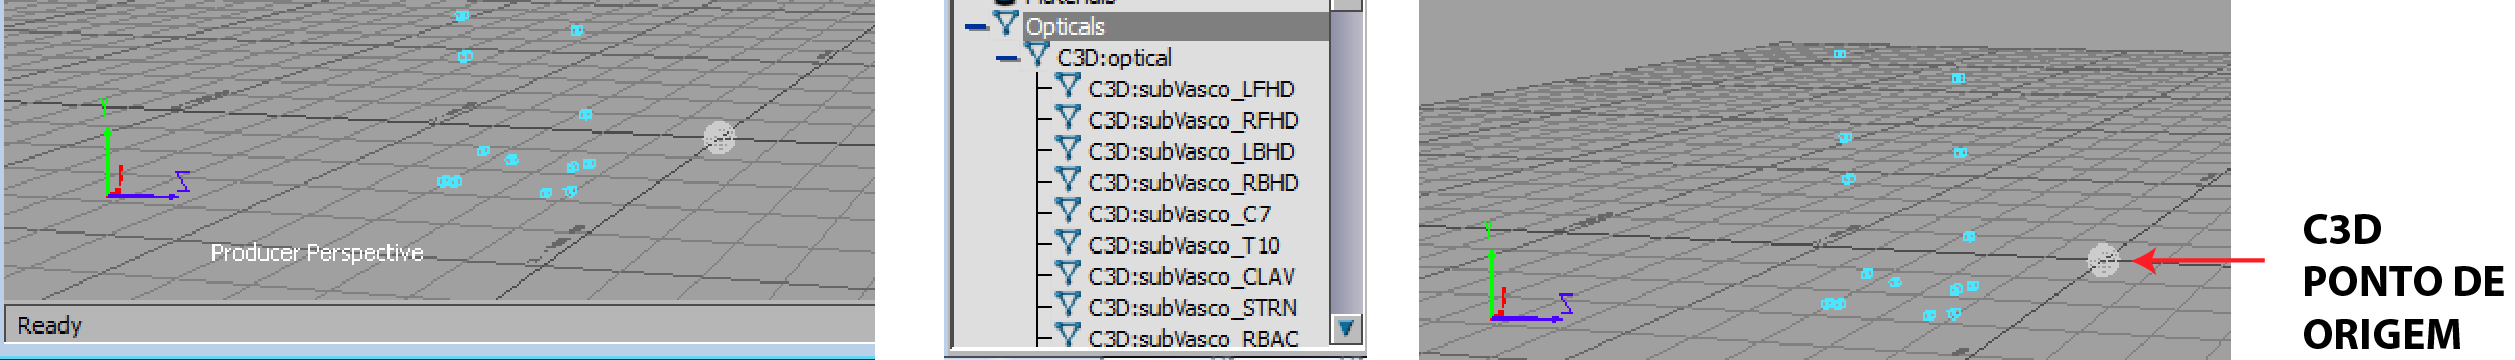 Na janela Navigator, é possível selecionar o item Opticals, onde se vêem todos os marcadores existentes bem como a referência à base o cloud data, o C3D:optical. Fig 2.